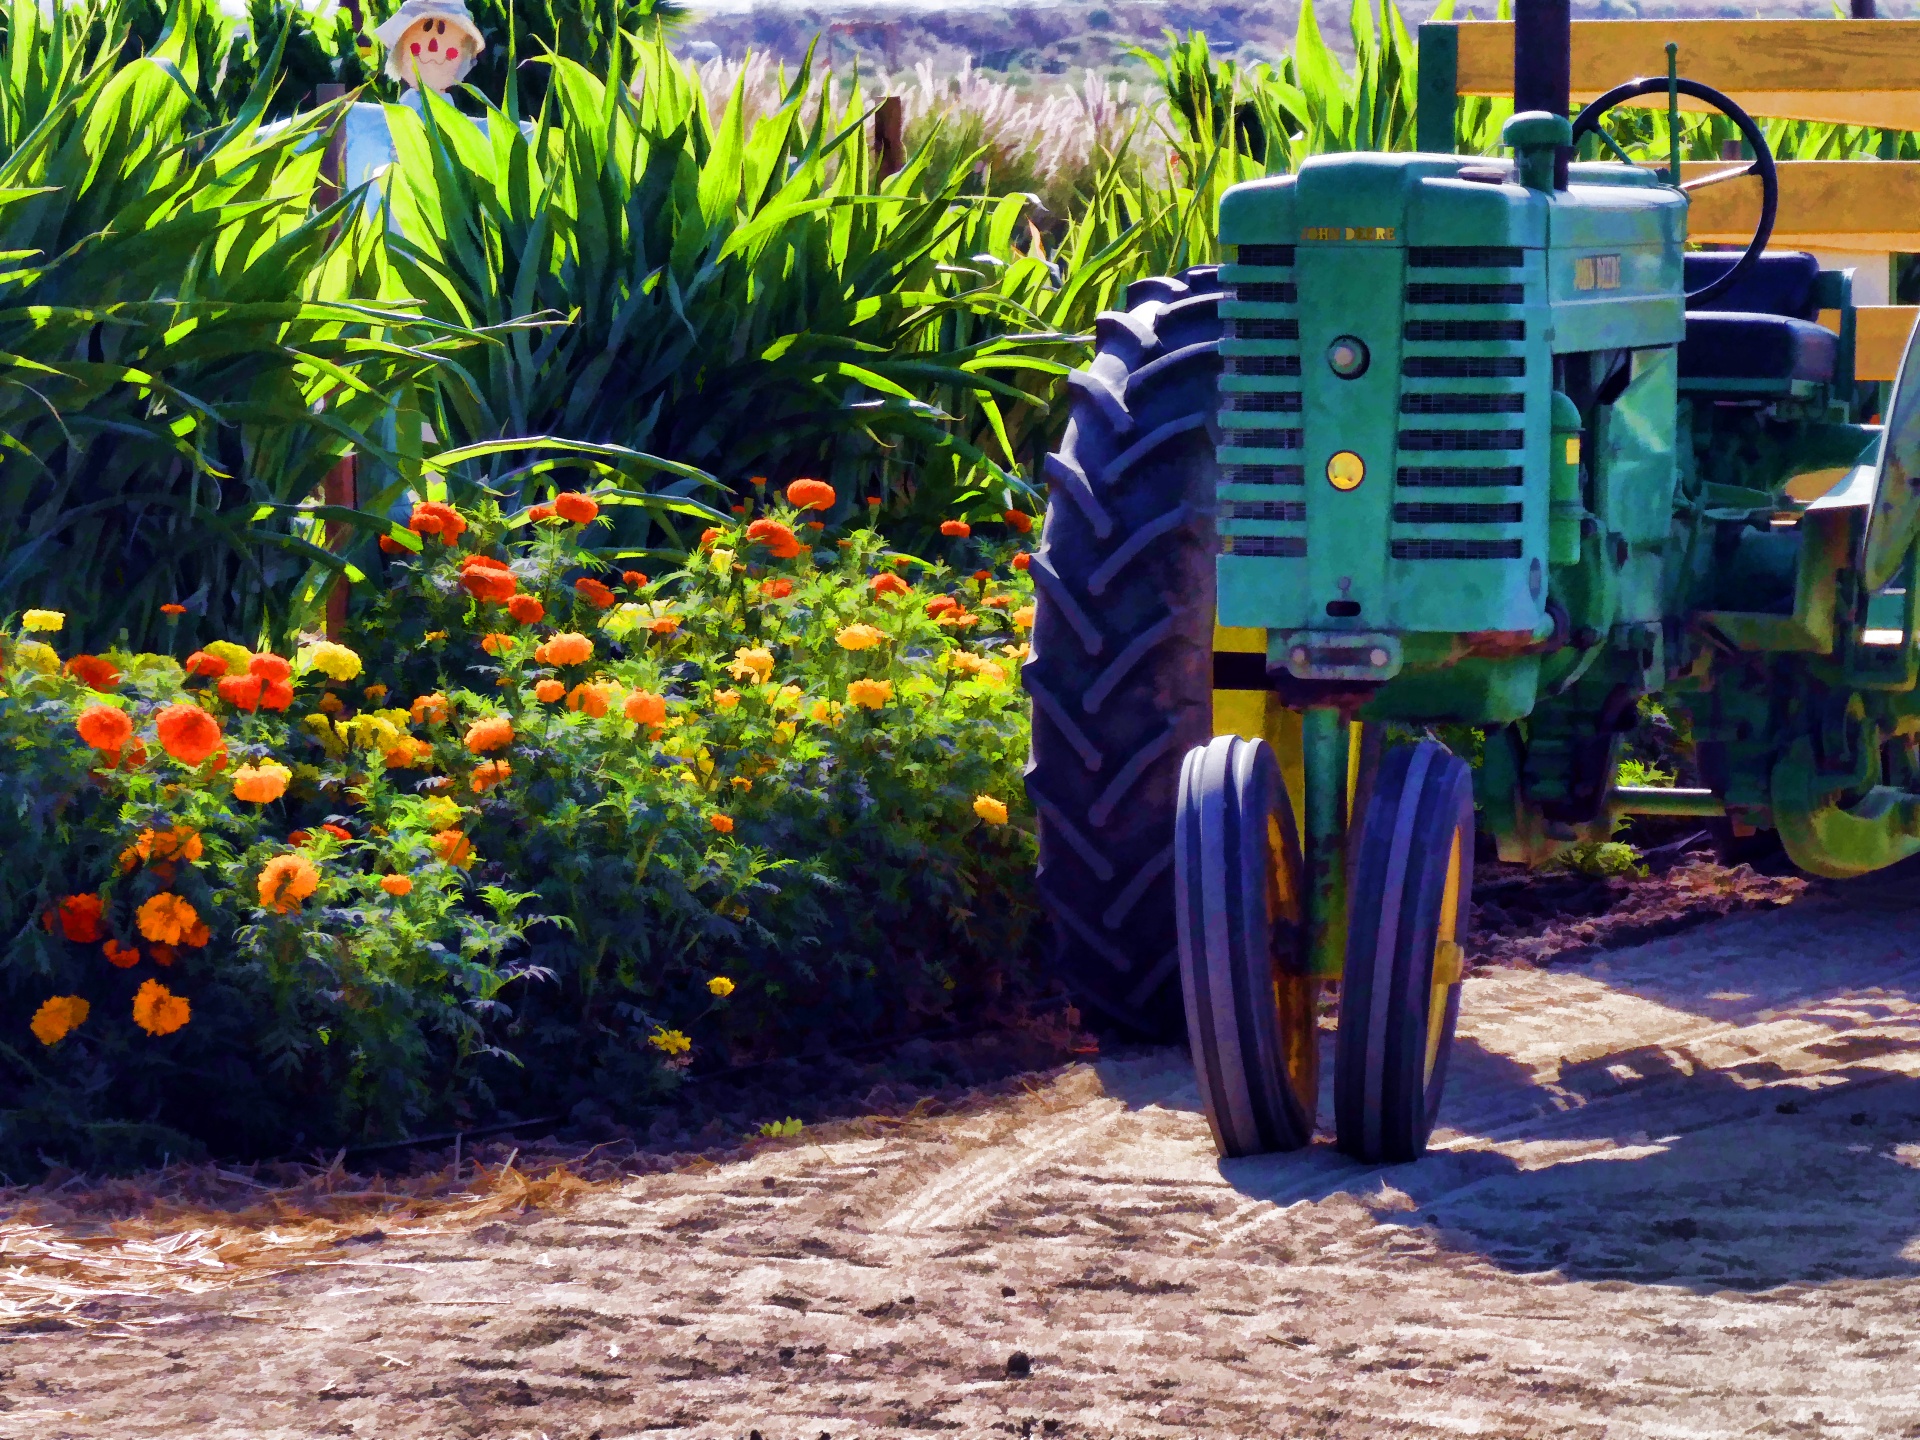 Representación artística de un tractor estacionado por campos de maíz con un scarcrow